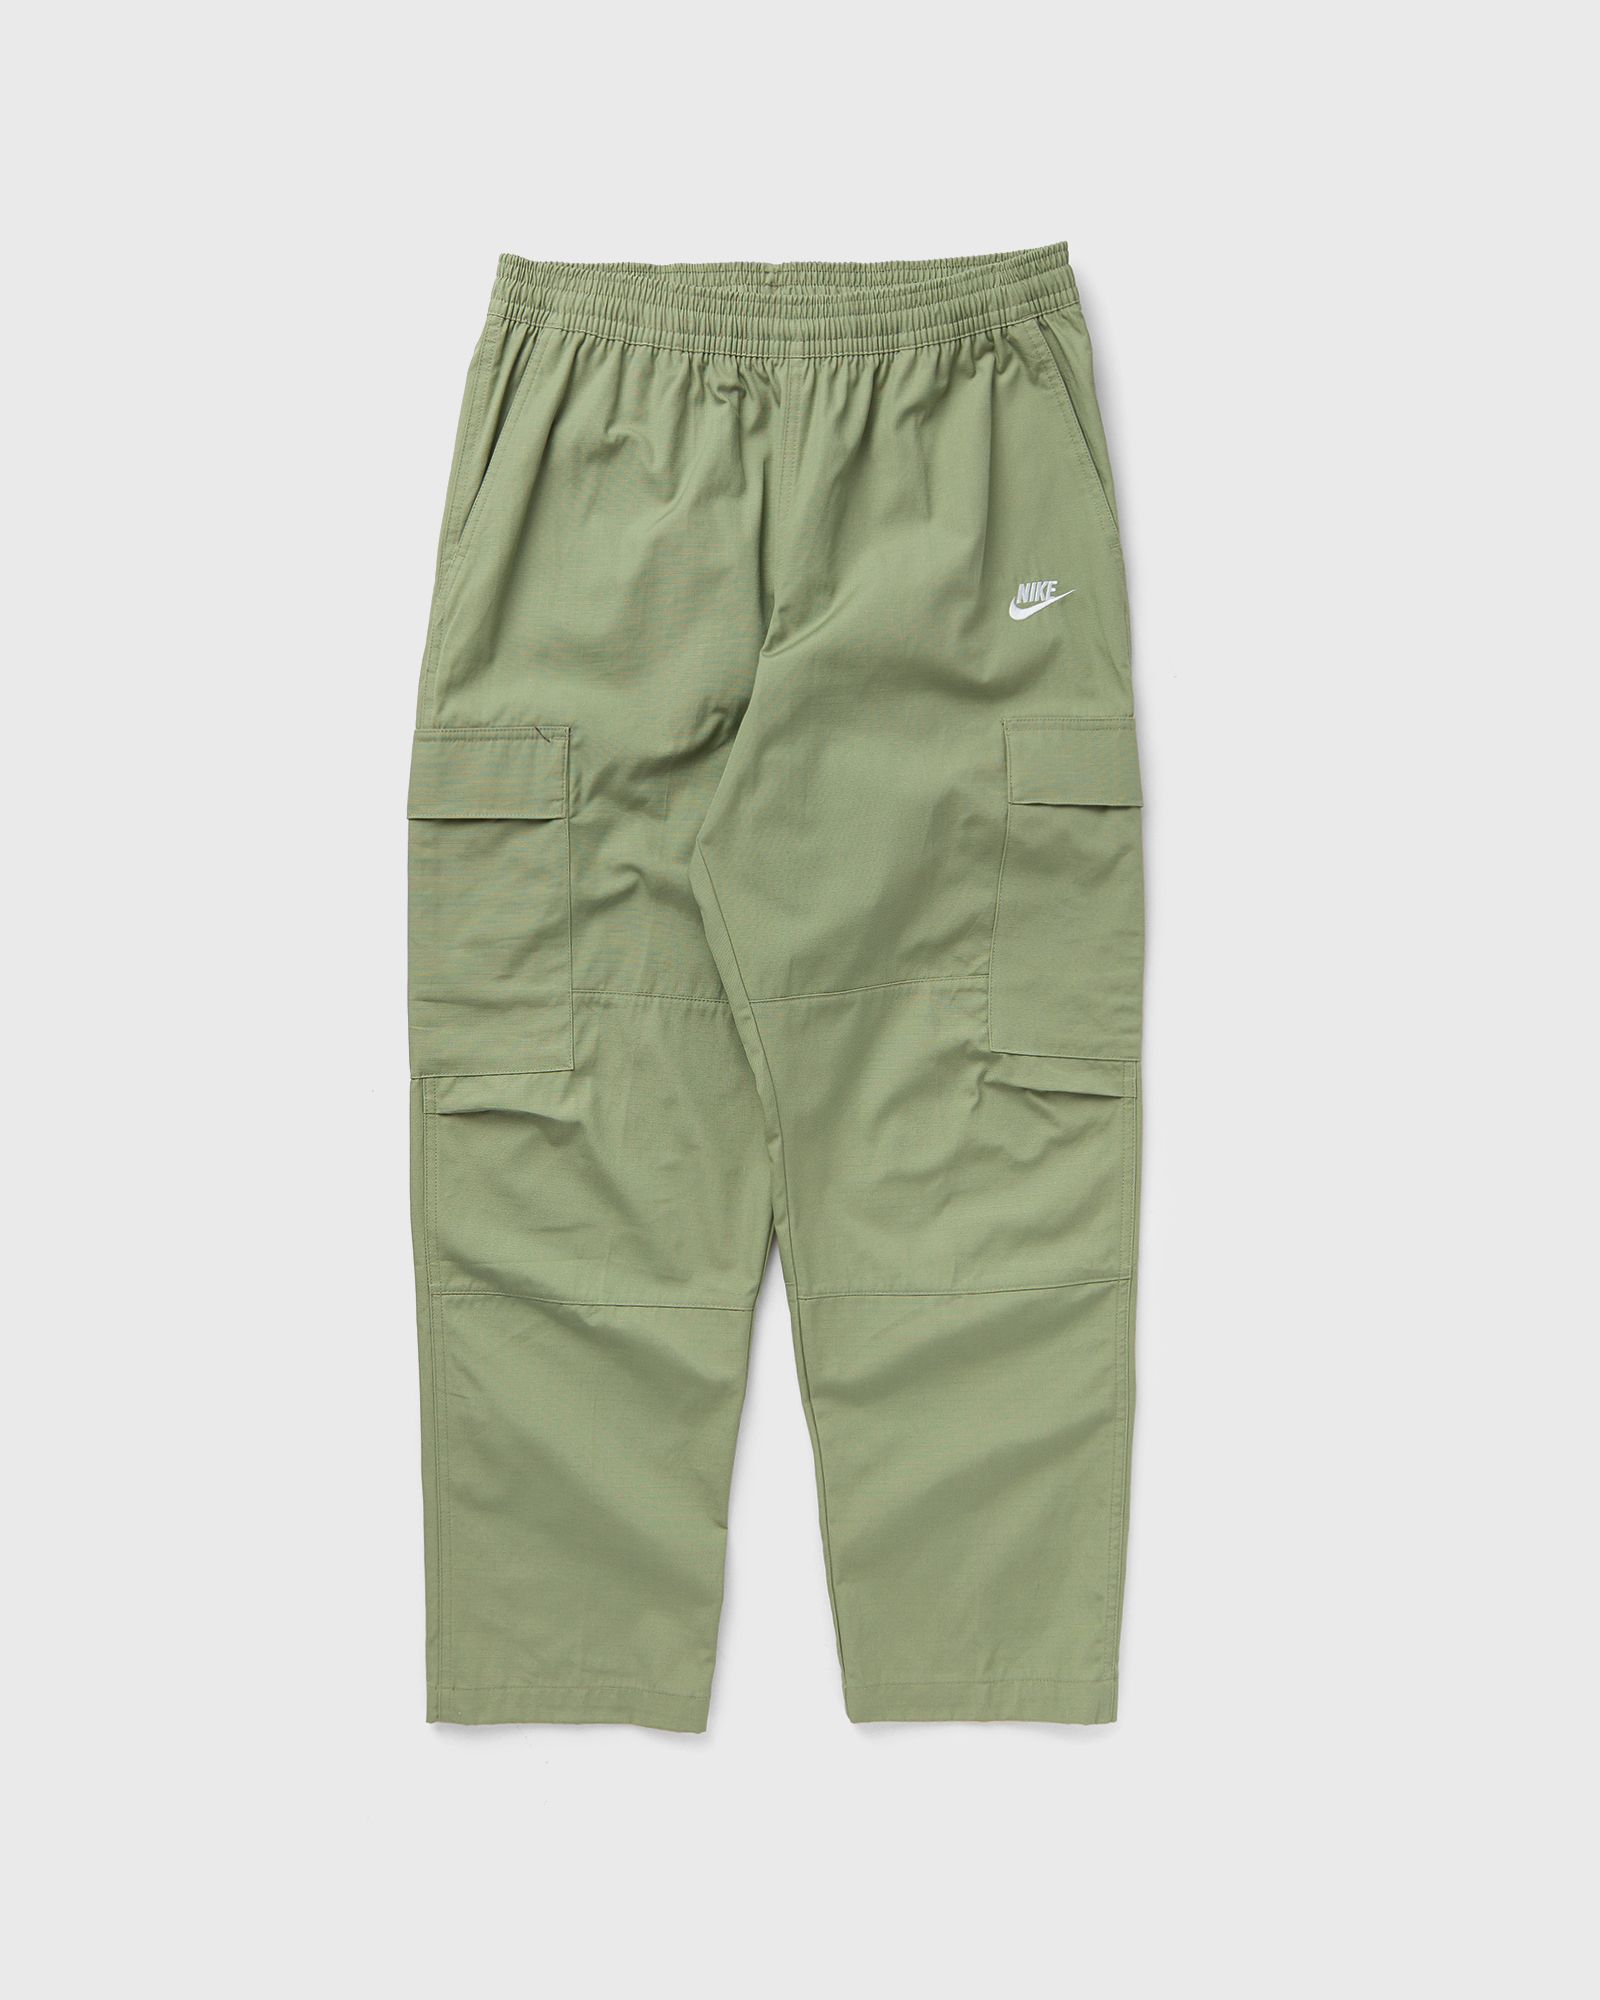 Nike - club woven cargo pants men cargo pants green in größe:xl